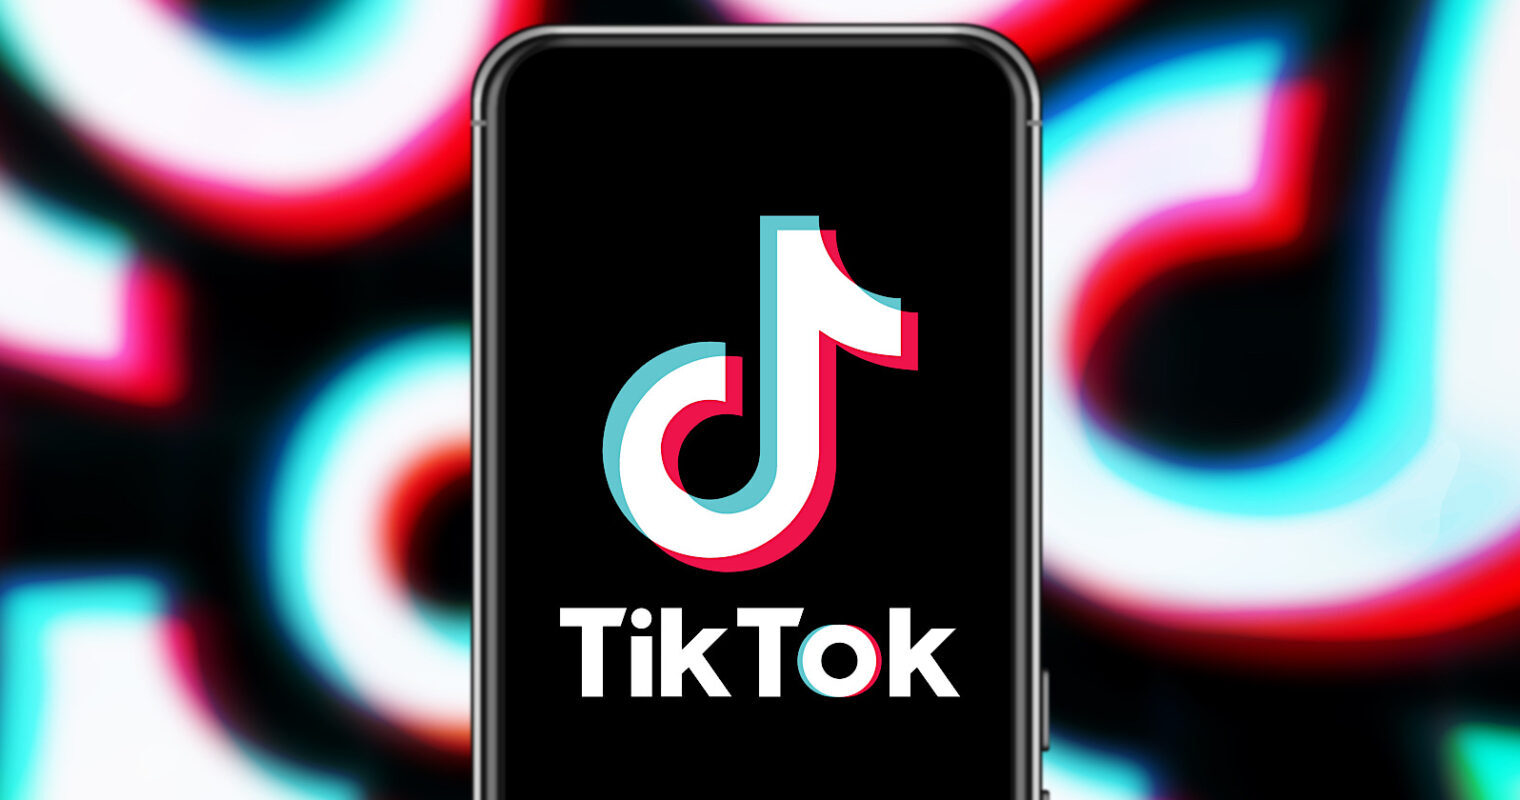  TikTok  Stories